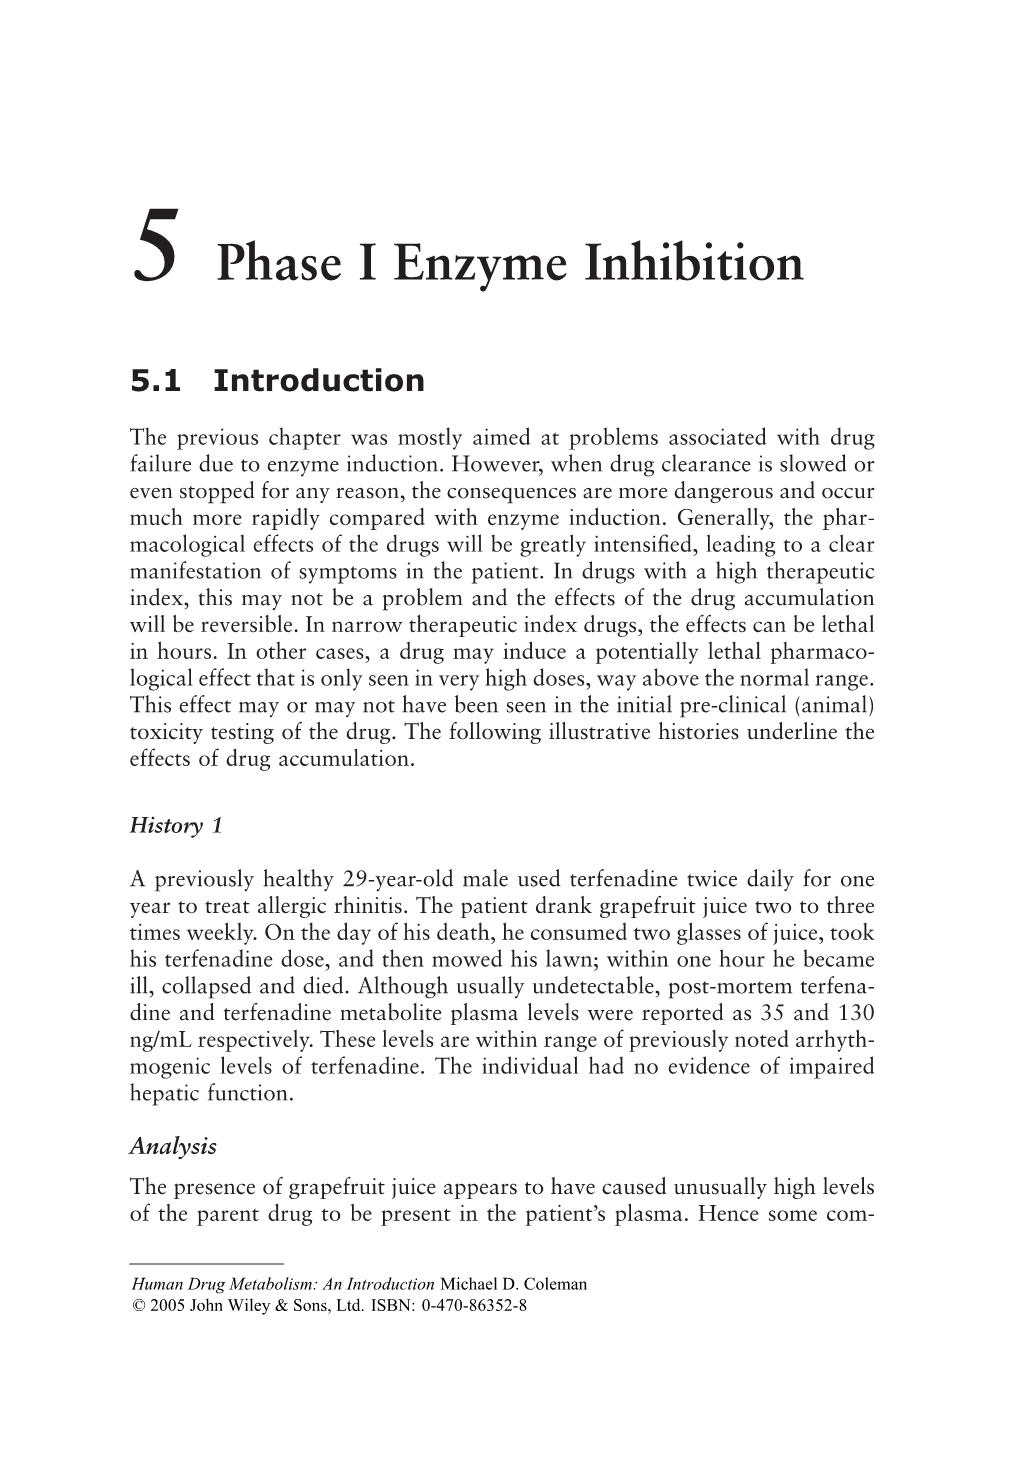 Phase I Enzyme Inhibition